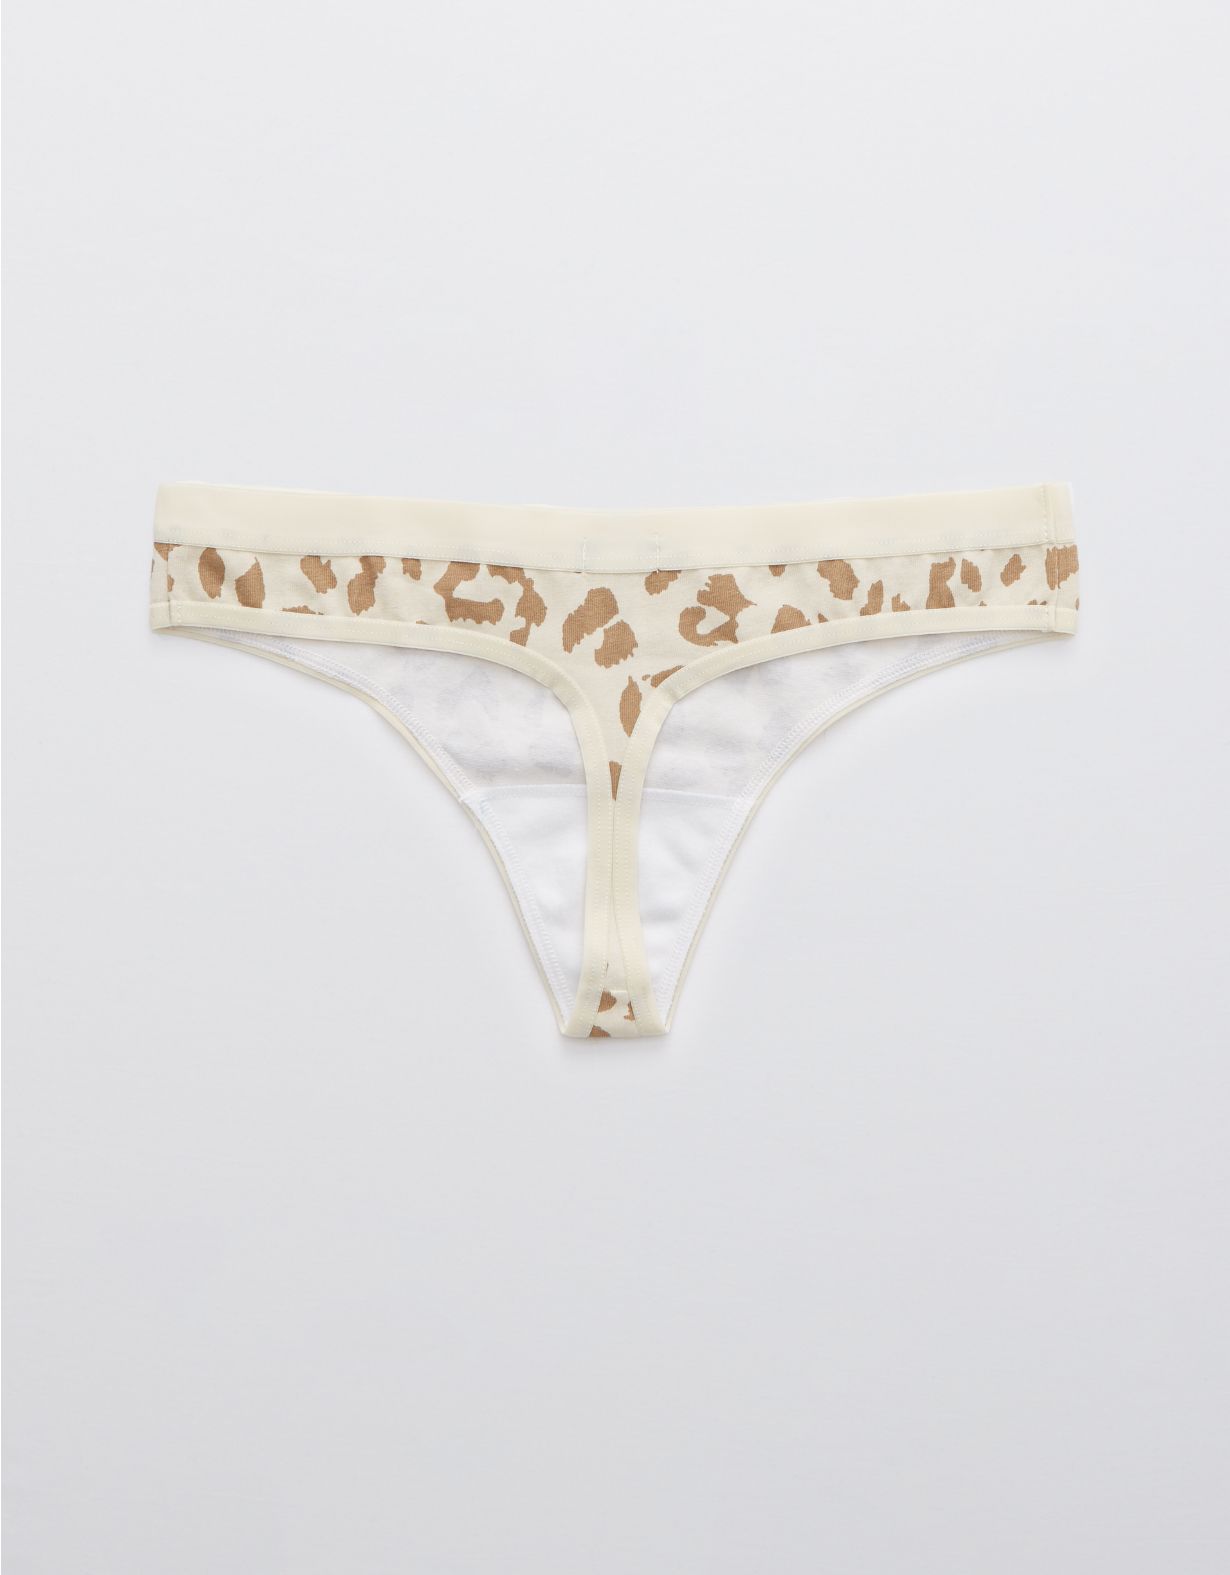 Aerie Cotton Leopard Thong Underwear